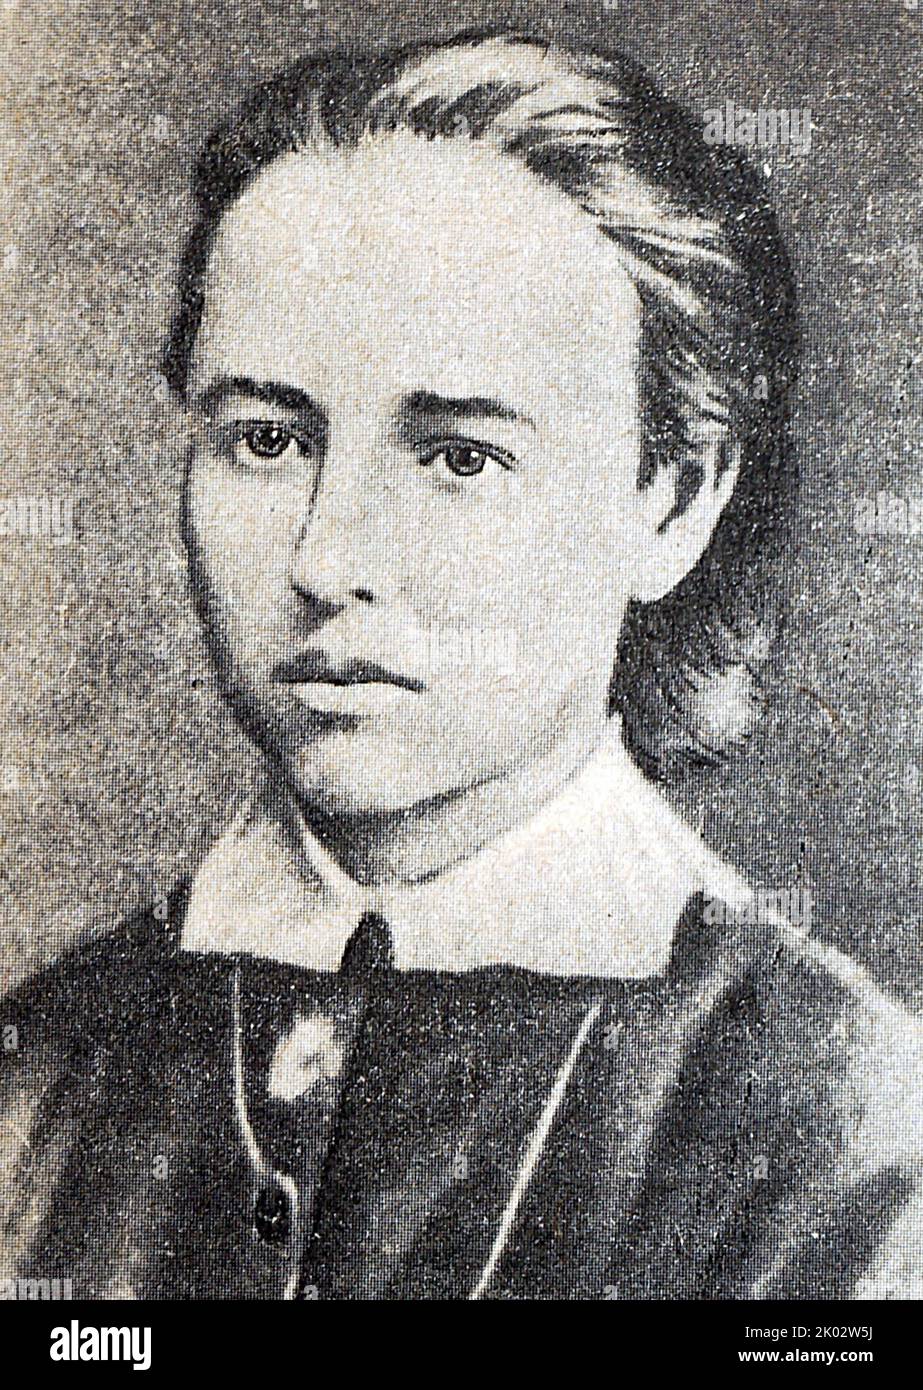 Sofia Lvovna Perova (1853-1881). Russischer Revolutionär und Mitglied der nihilistischen revolutionären Organisation Narodnaja Wolja. Sie half bei der erfolgreichen Tötung von Alexander II. Von Russland, für die sie durch Erhängen hingerichtet wurde. Stockfoto